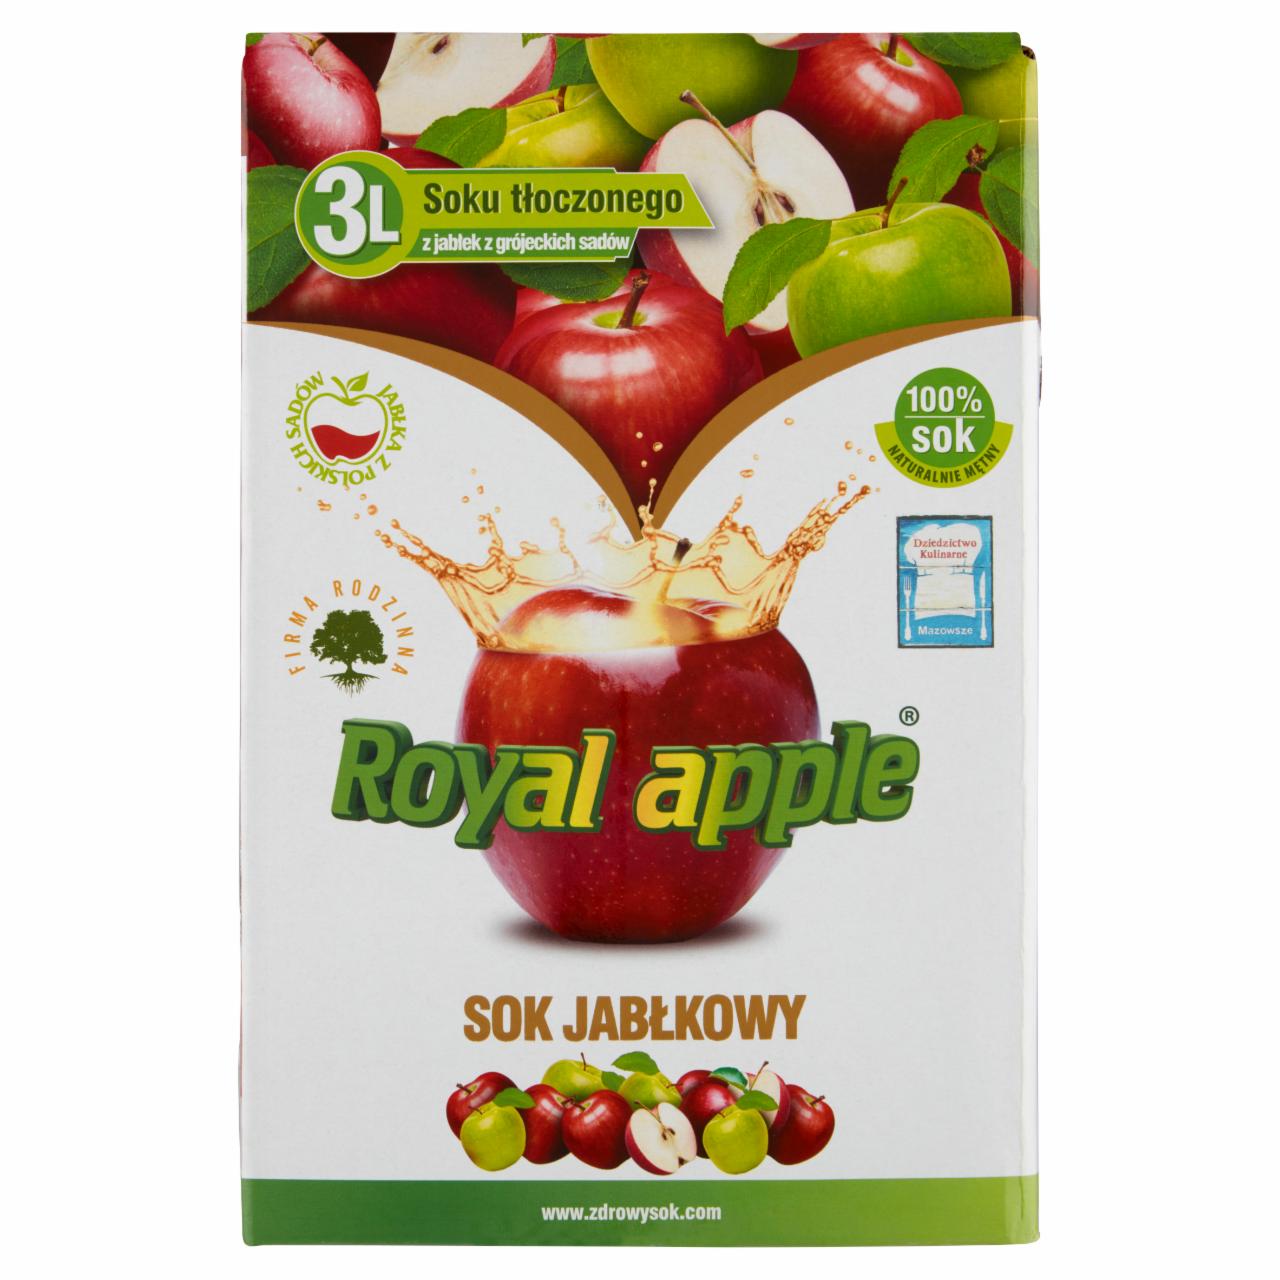 Zdjęcia - Royal apple Sok 100 % jabłkowy 3 l